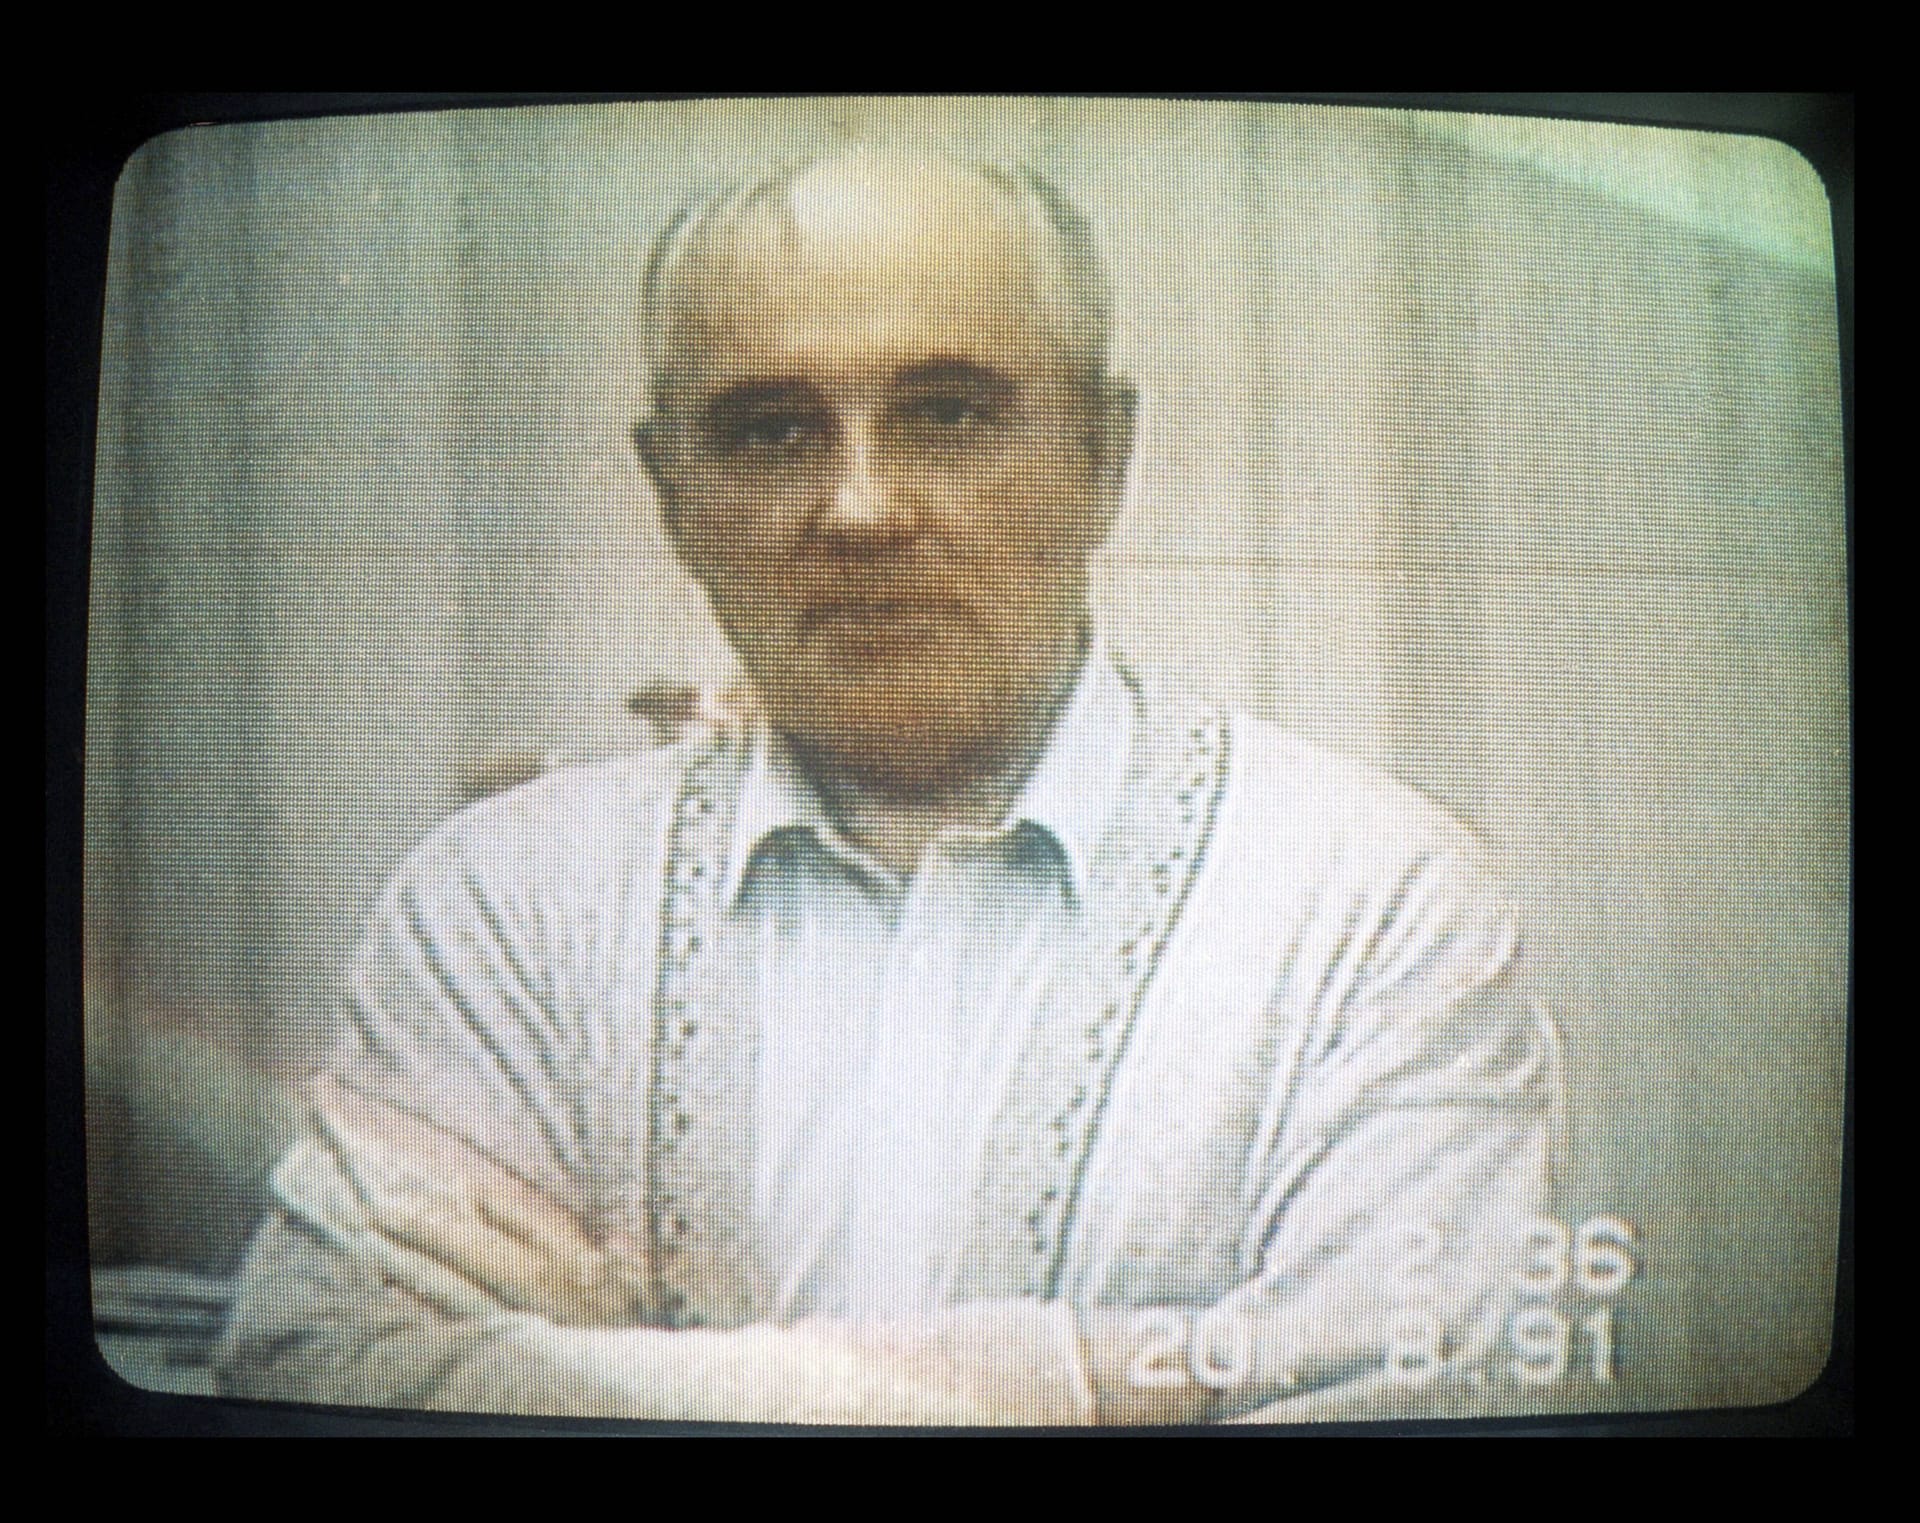 In der Sowjetunion regte sich im August 1991 Widerstand gegen Gorbatschows Reformen. Gorbatschow wurde auf der Krim festgesetzt, bald brach der Putschversuch allerdings zusammen. Die Aufnahme zeigt Gorbatschow während der Festsetzung.